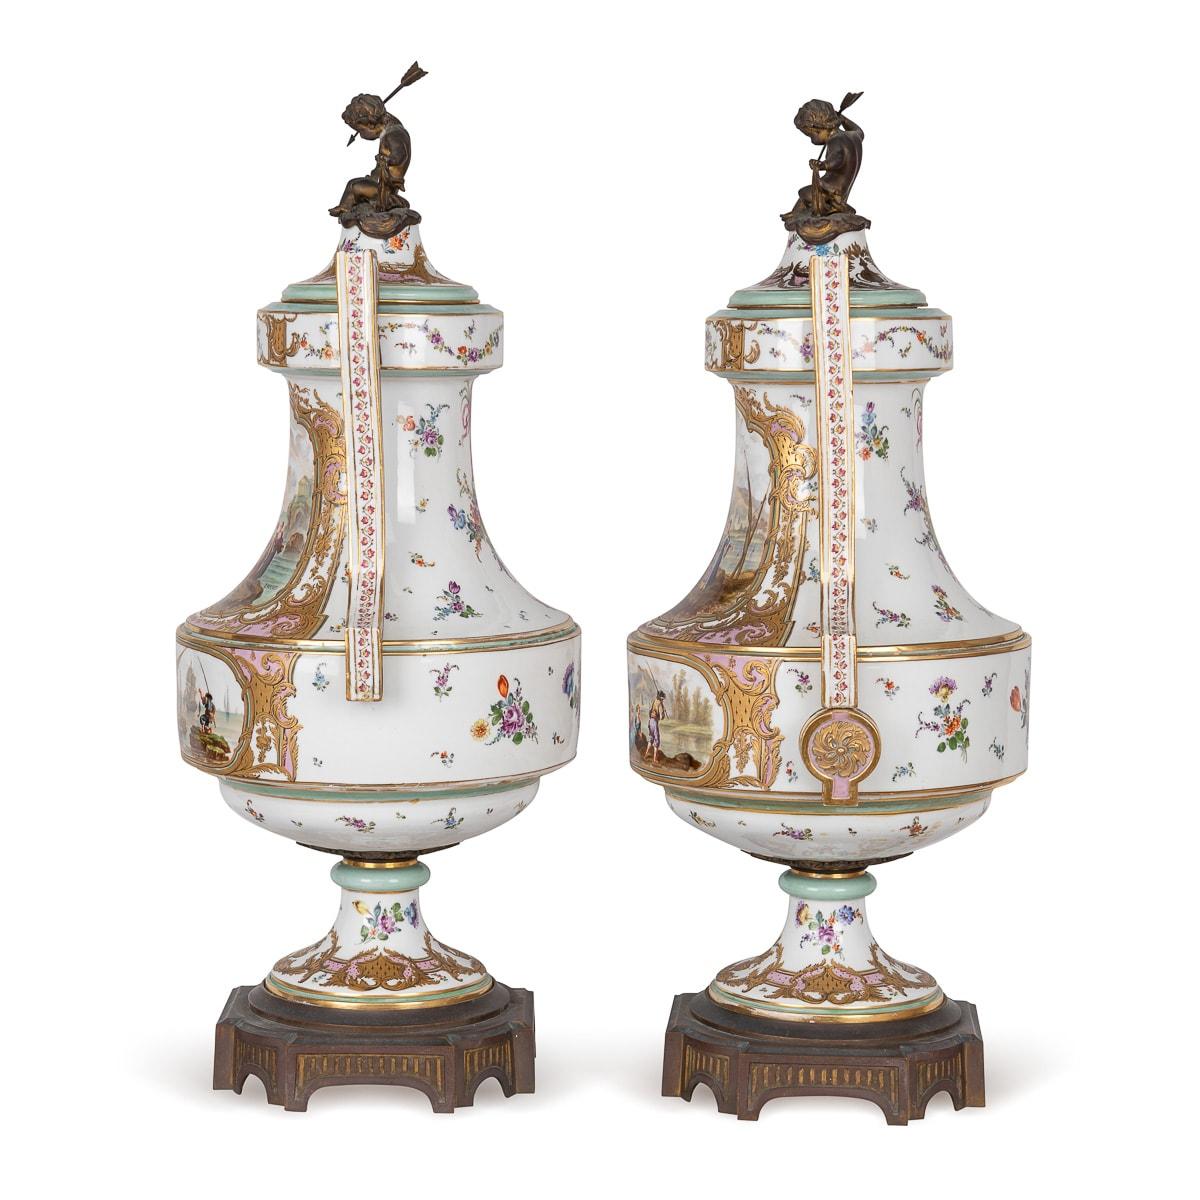 Les anciens vases à couvercle en porcelaine Samson du XIXe siècle présentent des montures complexes en bronze doré qui ornent à la fois la base et le couvercle. Les couvercles sont couronnés de fleurons en forme de chérubins, ornés de délicats